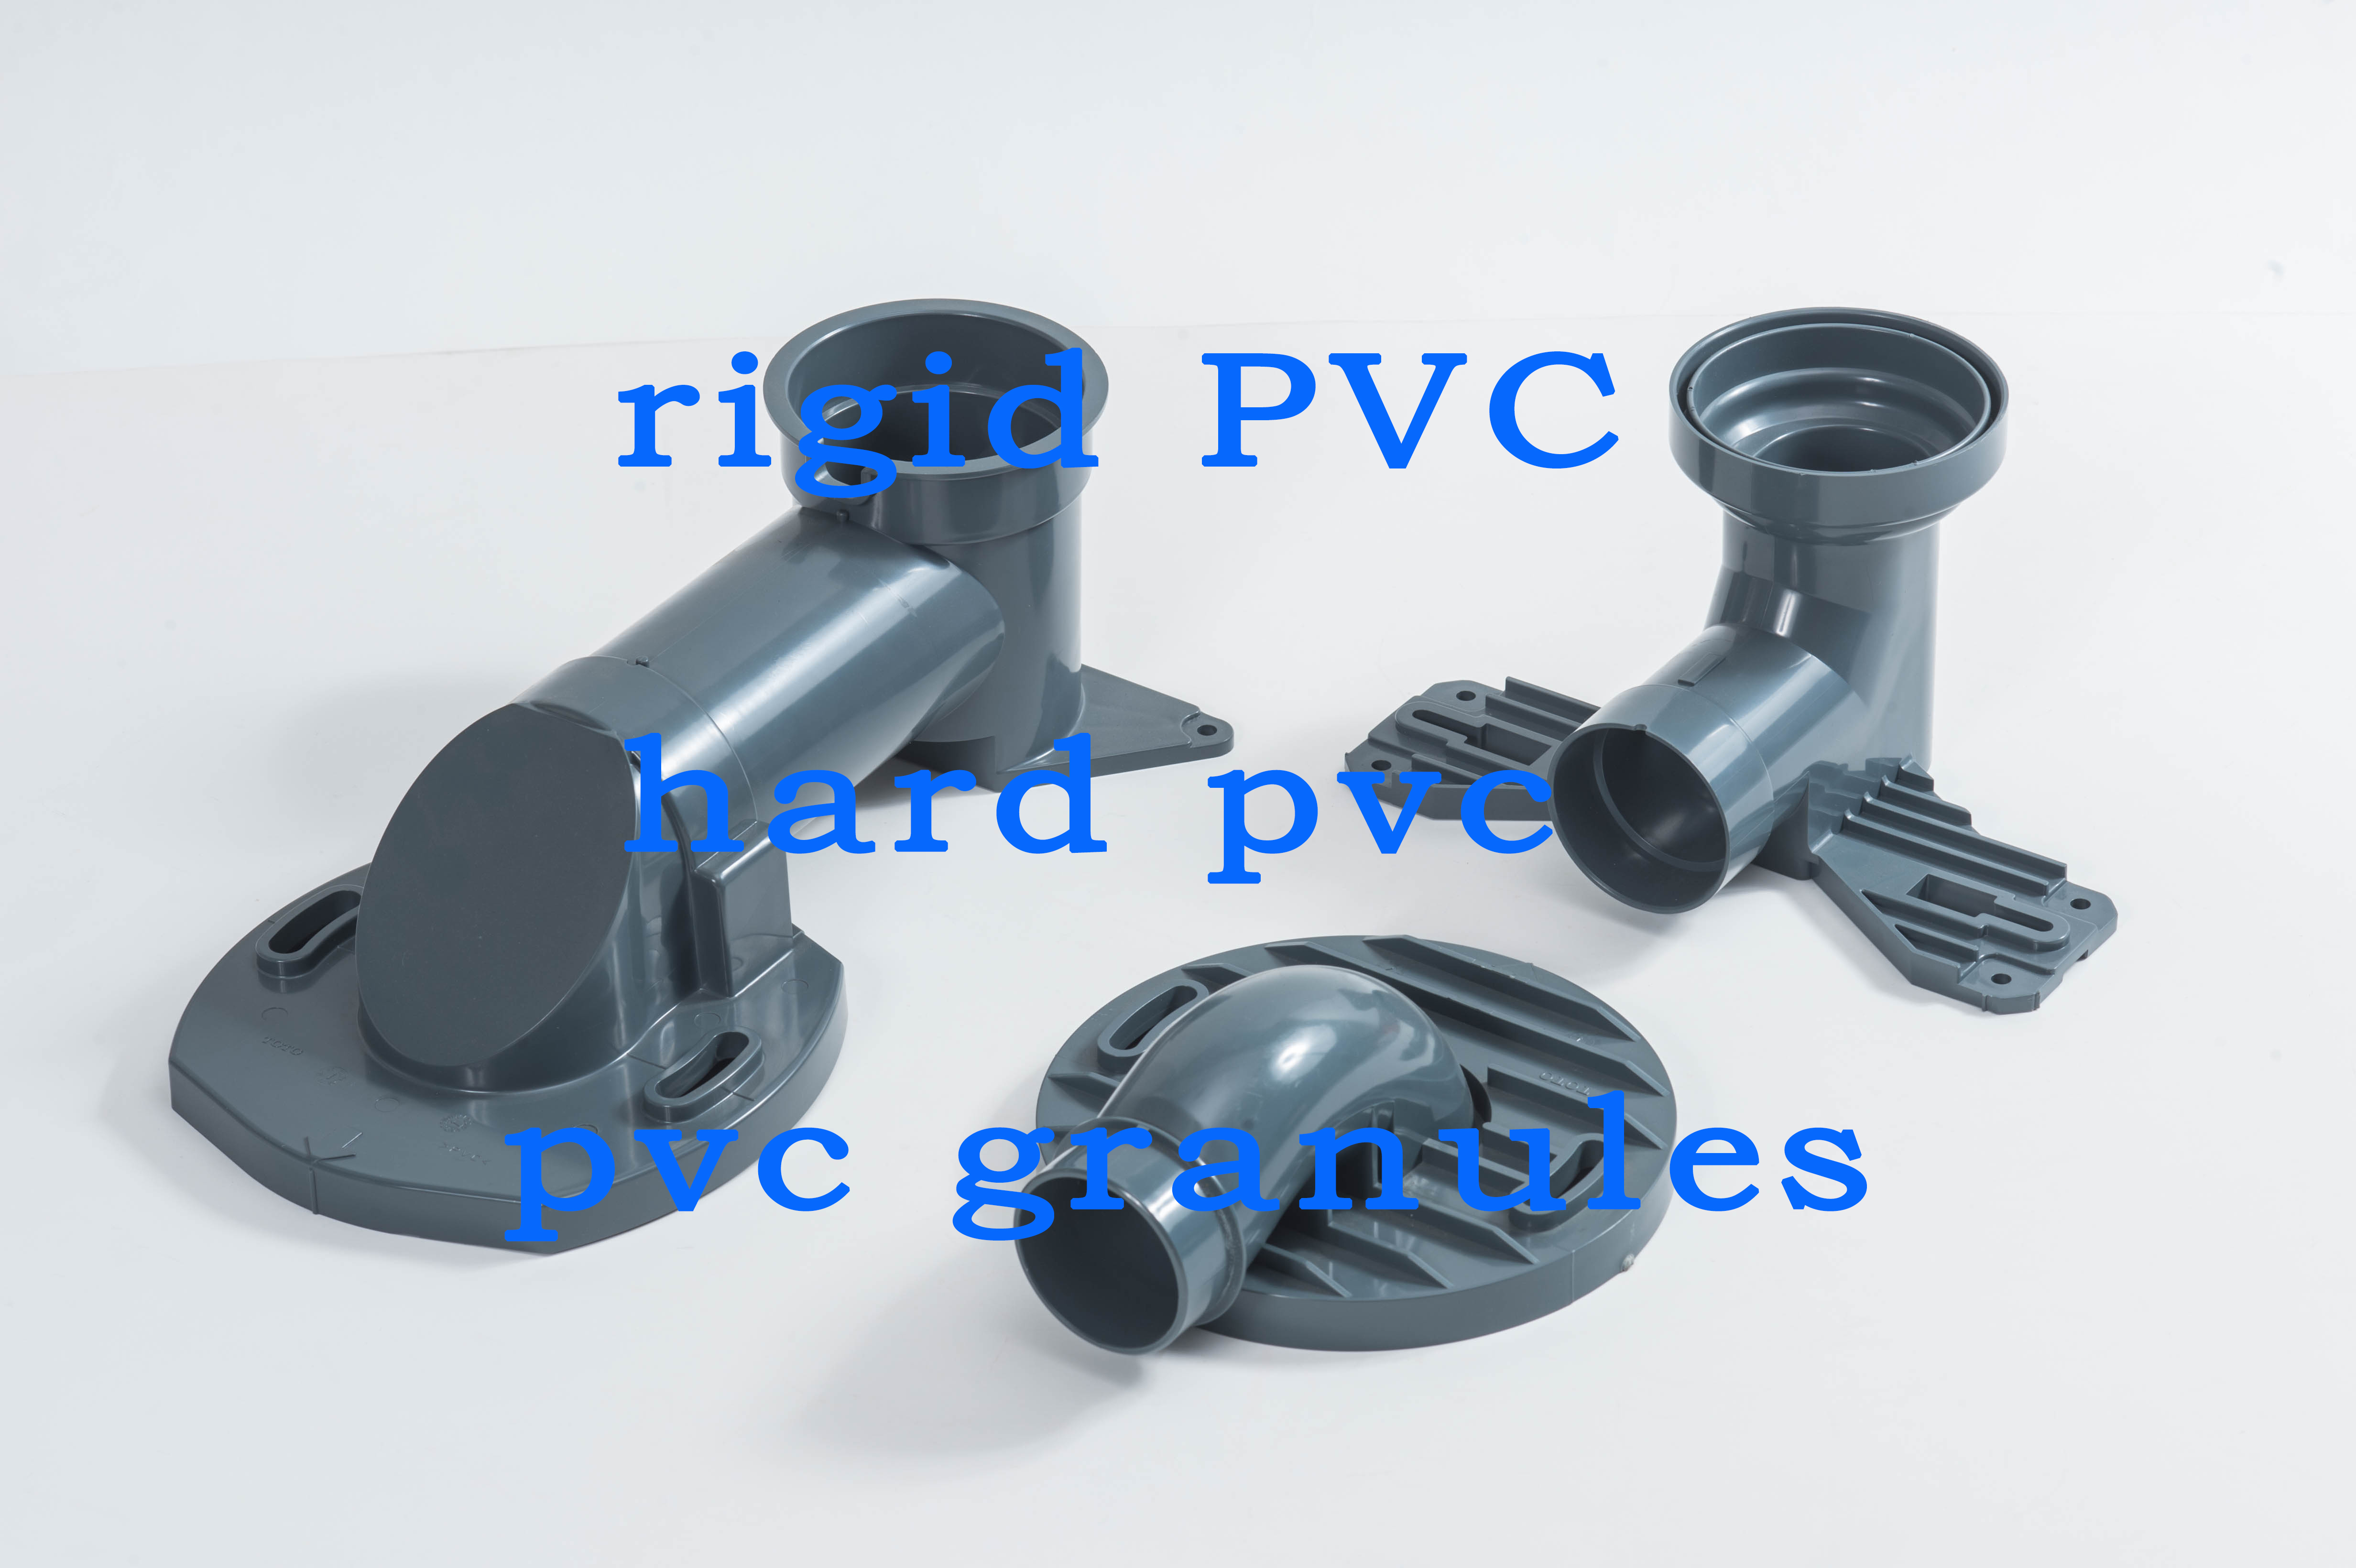 无锡嘉弘塑料科技有限公司的硬质PVC粒料在卫浴管件行业中的应用情况和优势有哪些？